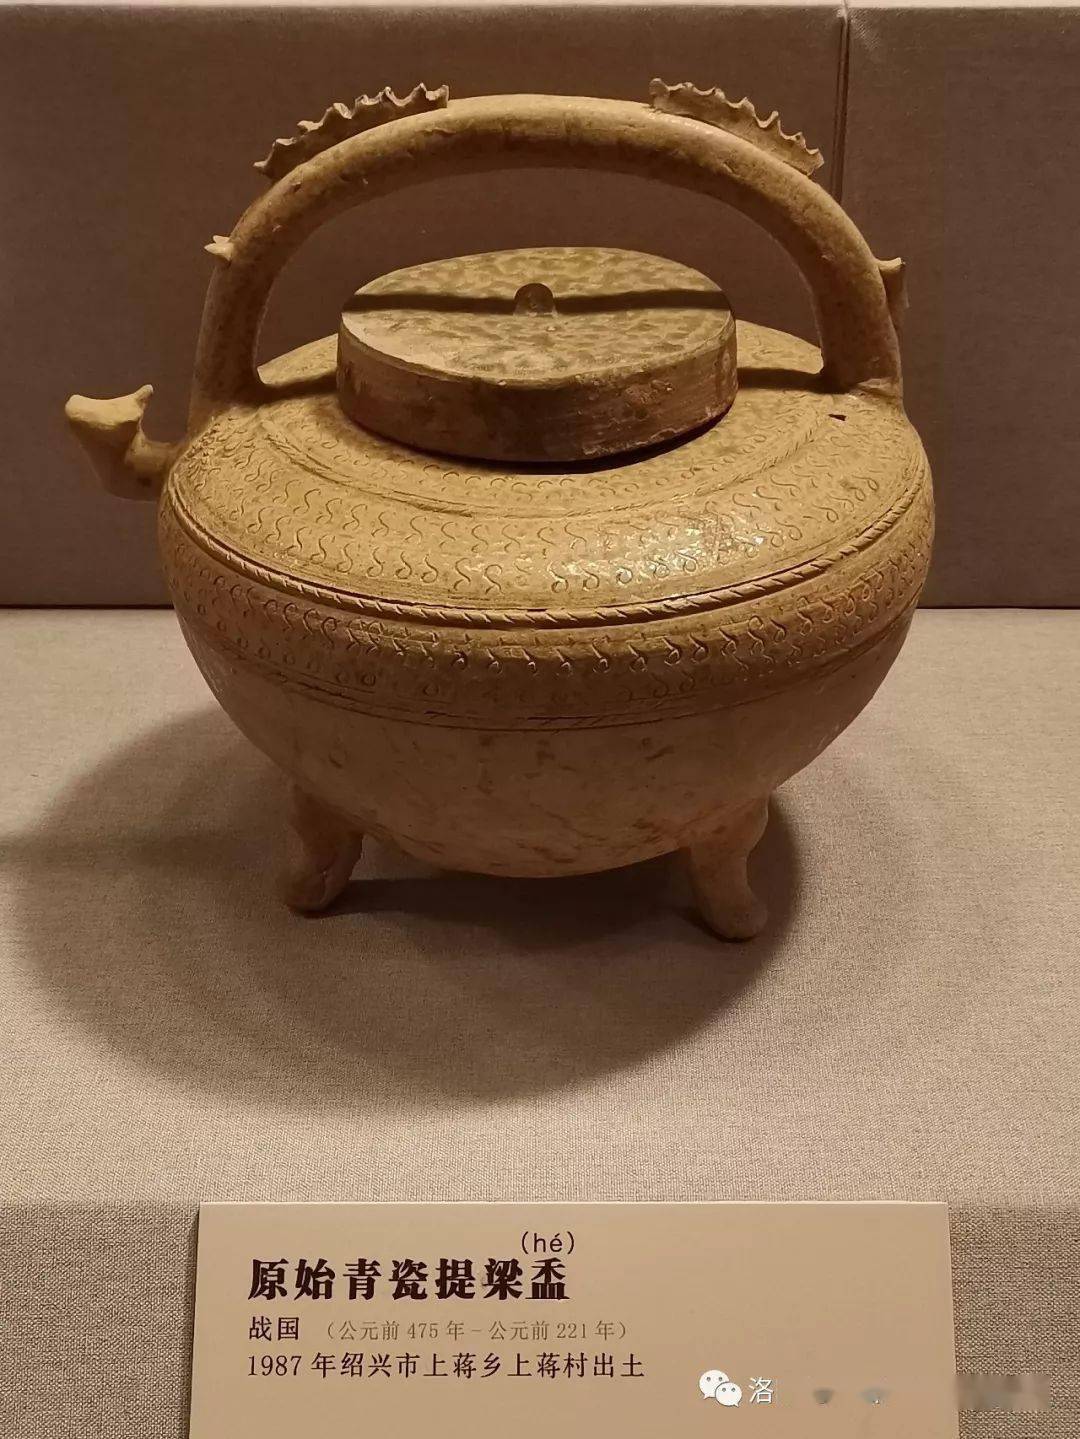 中国瓷器的鼻祖——原始青瓷